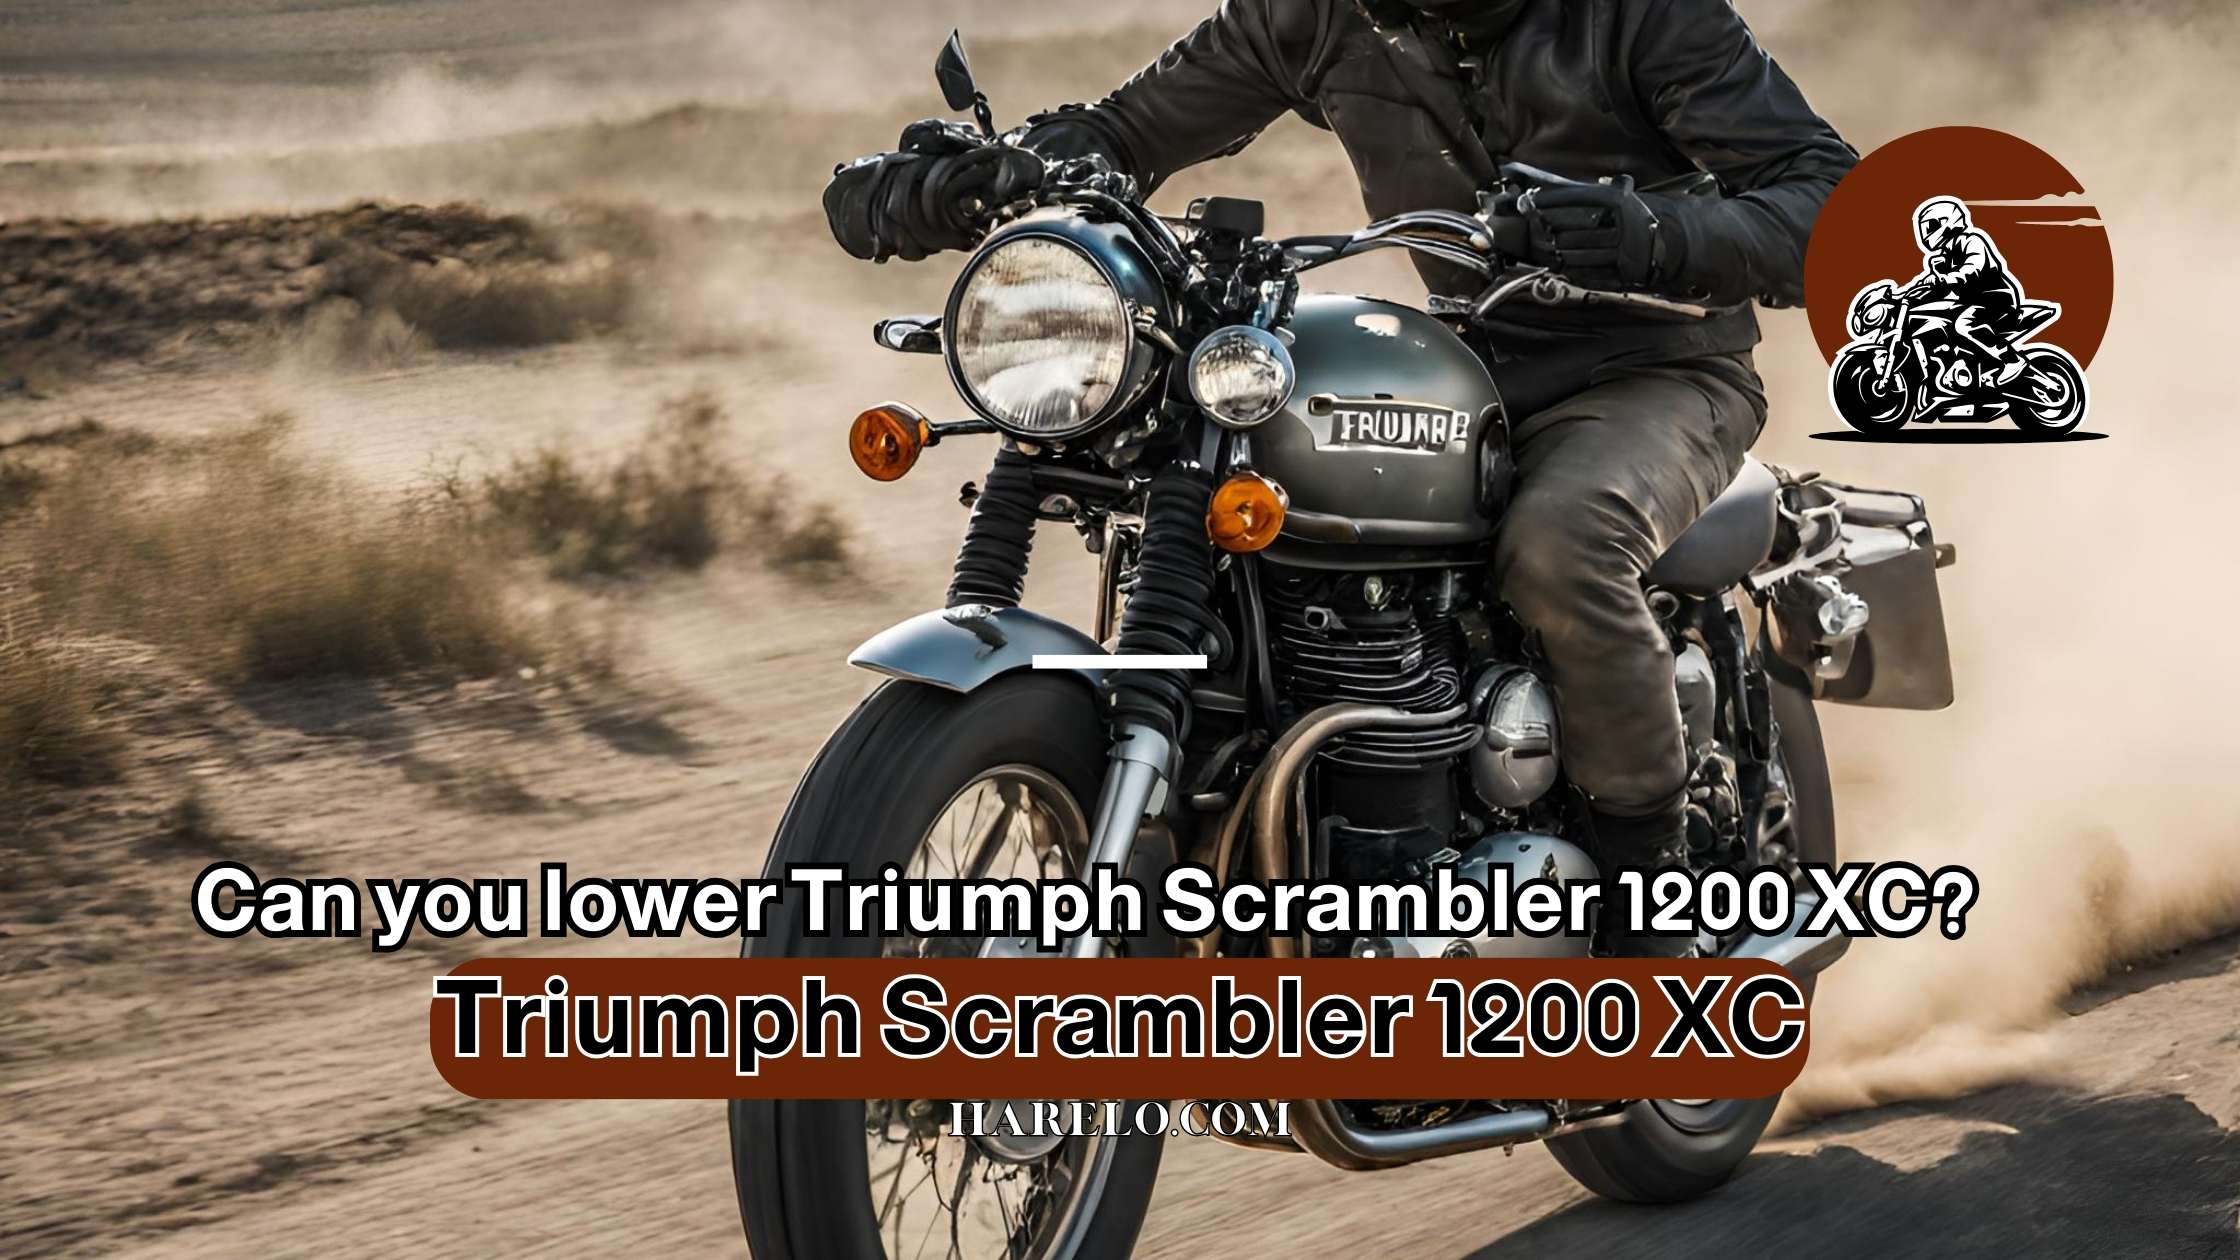 Can you lower Triumph Scrambler 1200 XC